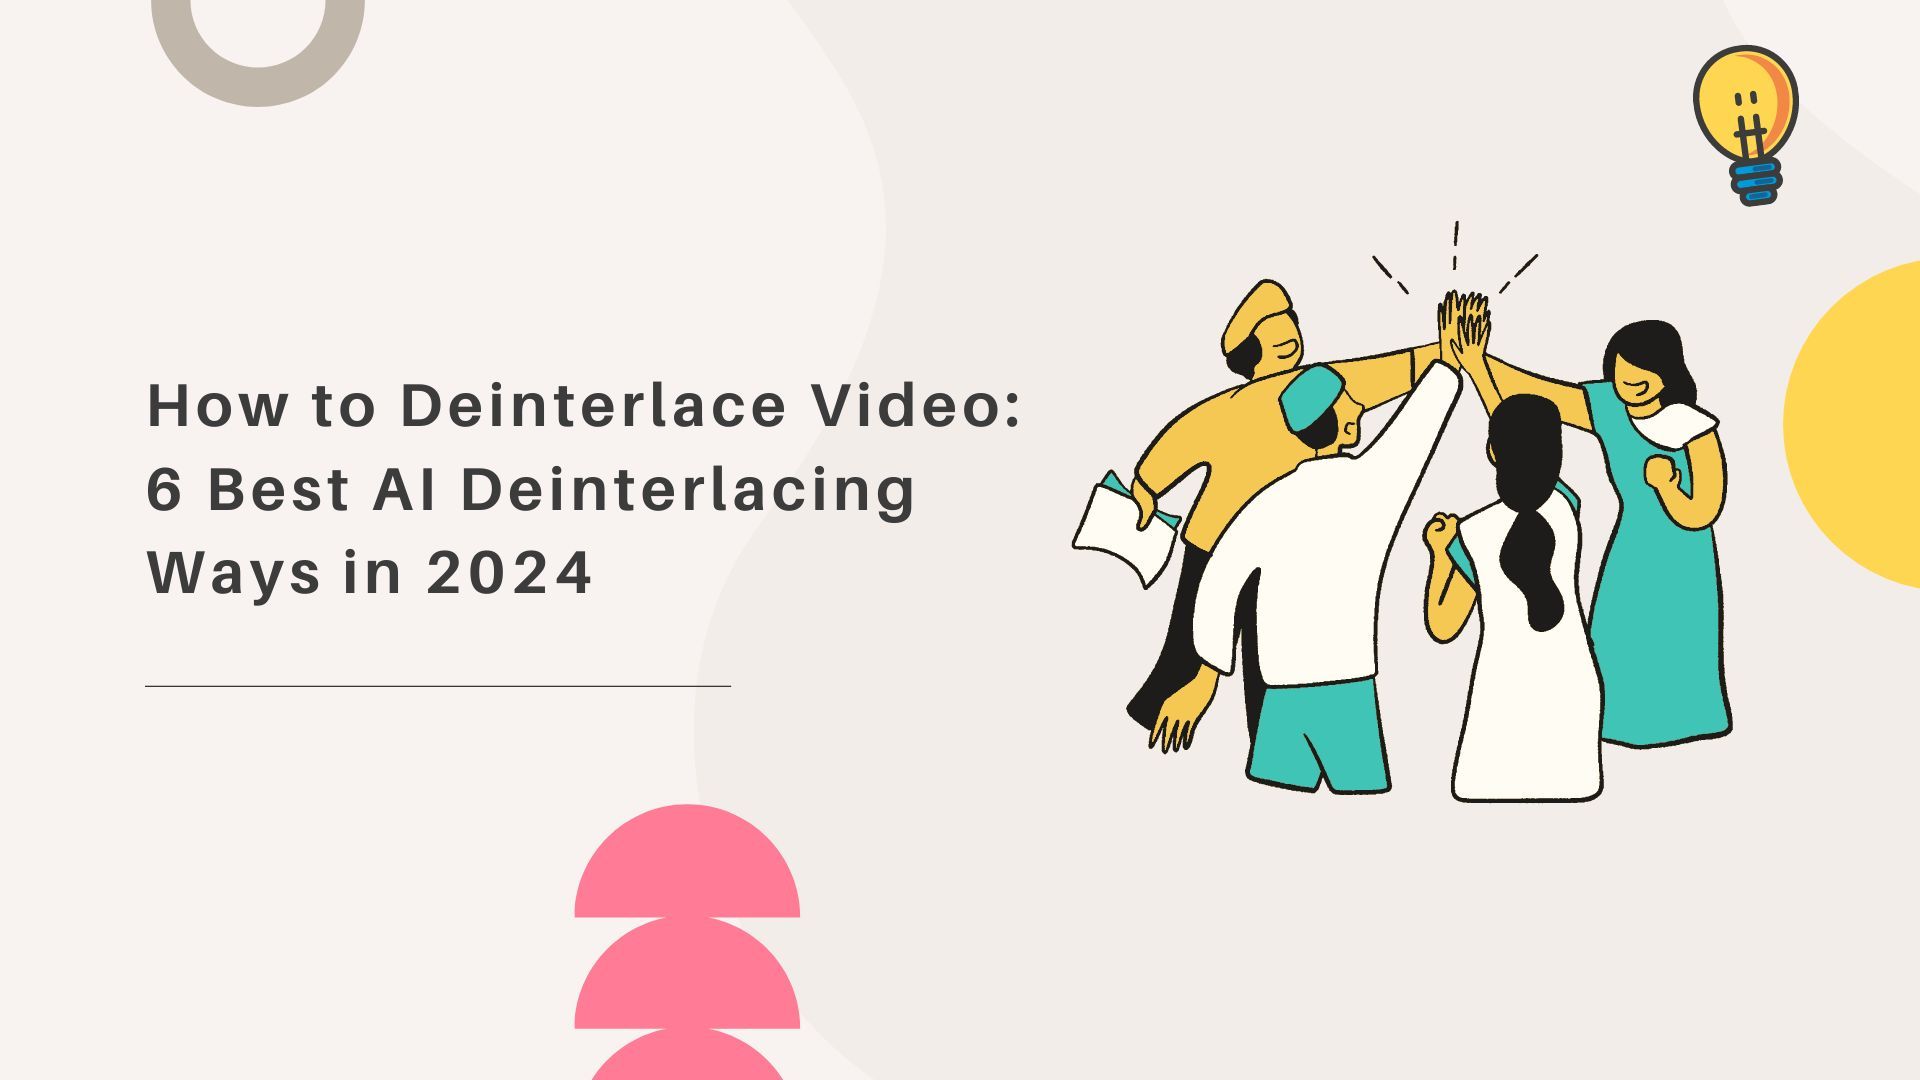 How to Deinterlace Video: 6 Best AI Deinterlacing Ways in 2024